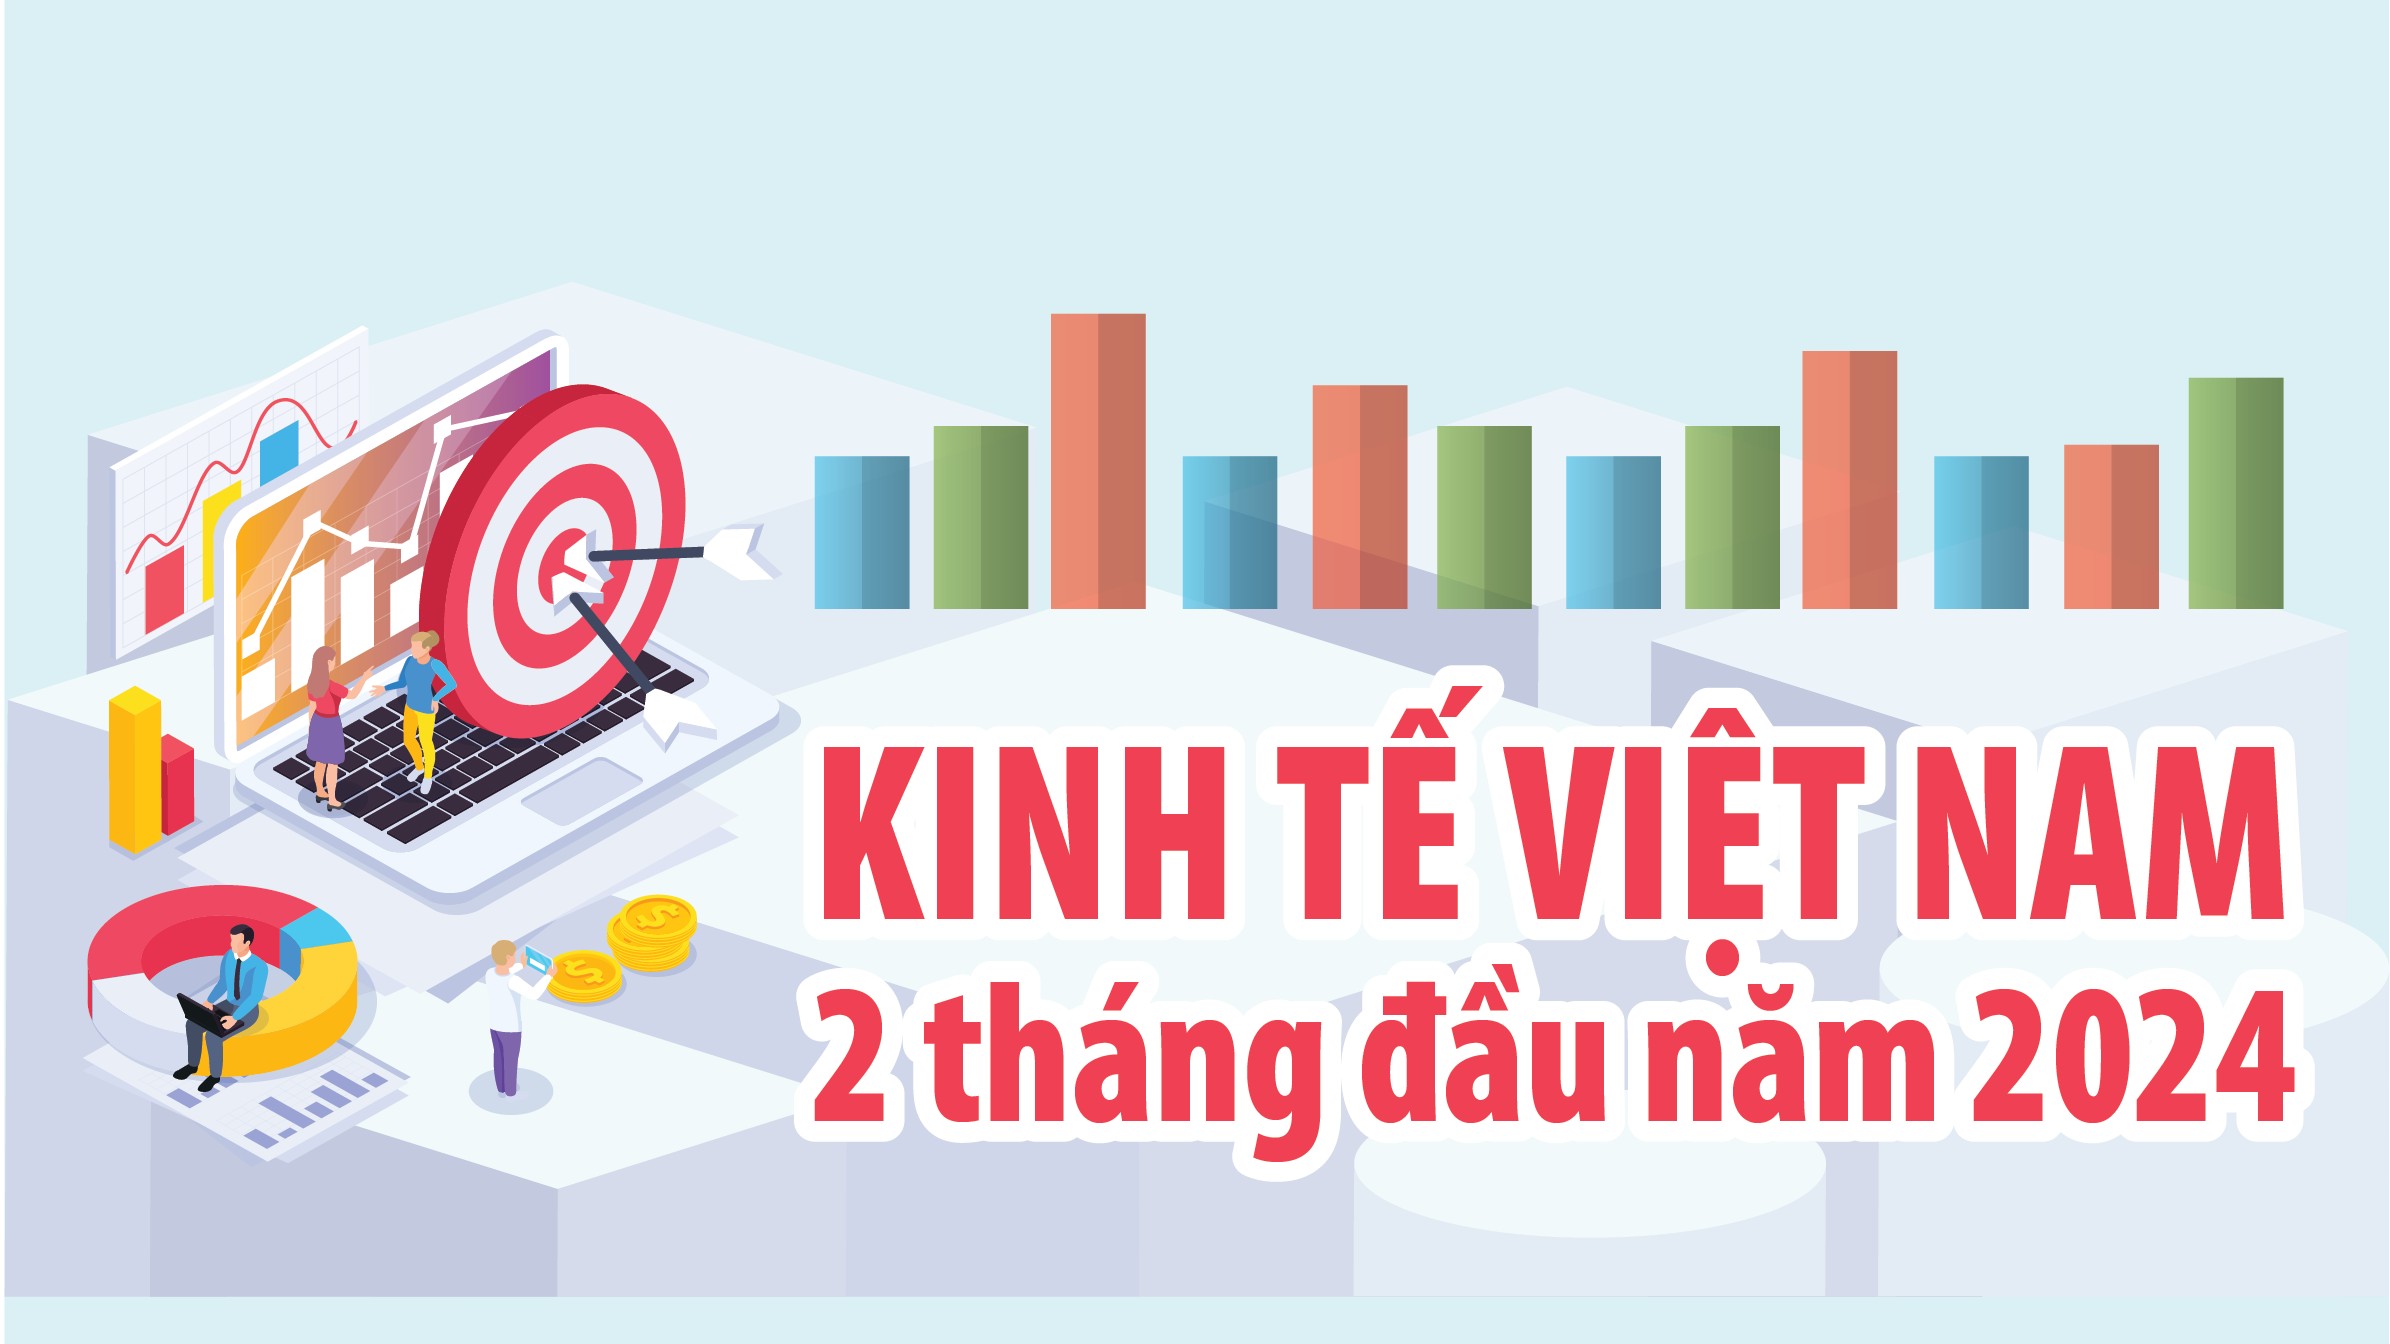 Toàn cảnh kinh tế Việt Nam 2 tháng đầu năm 2024